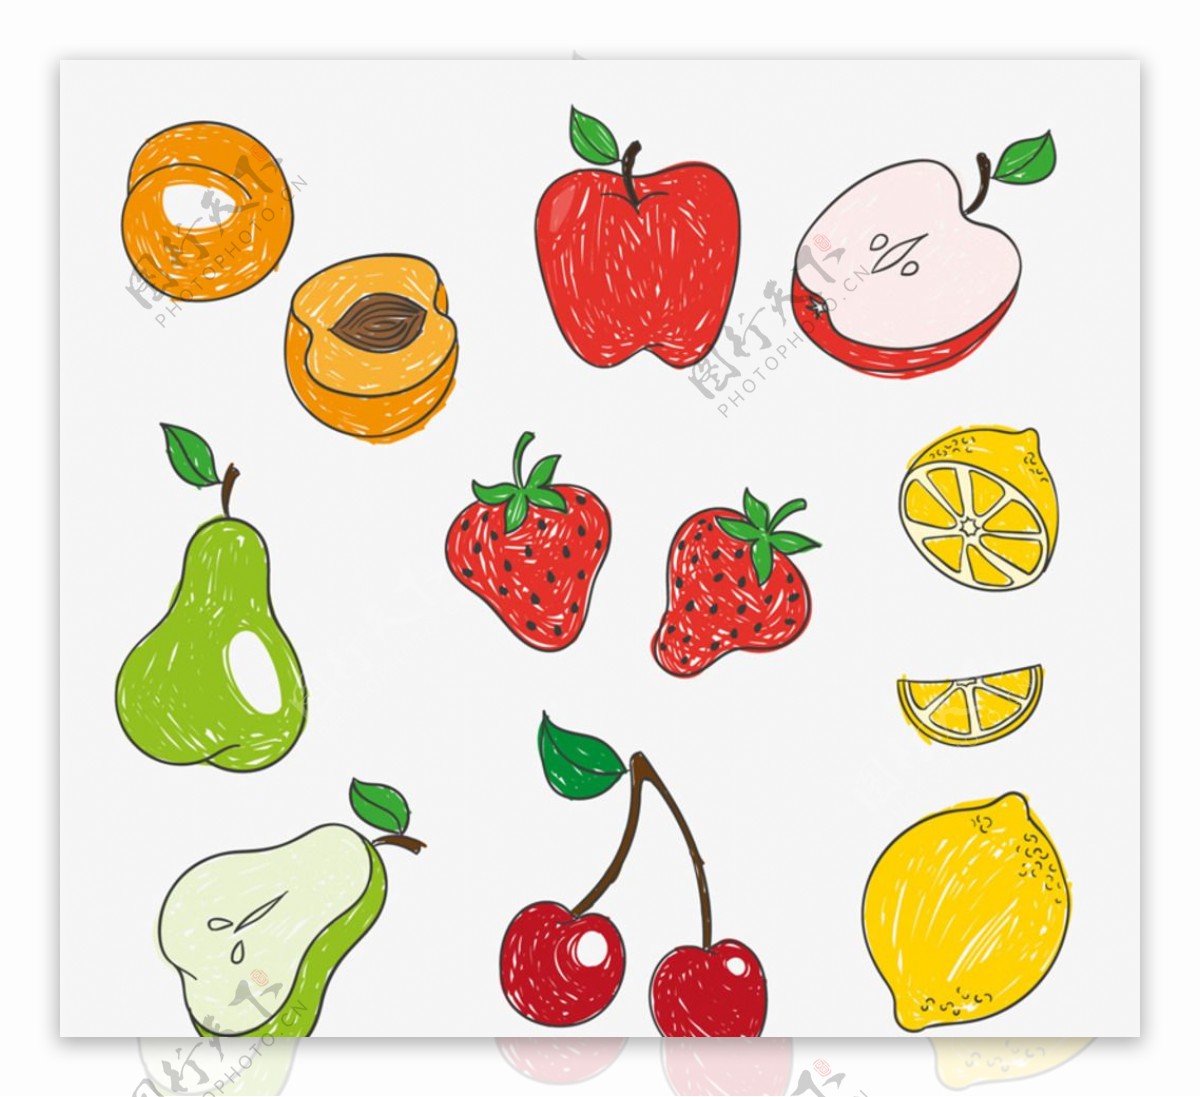 彩绘水果设计矢量图